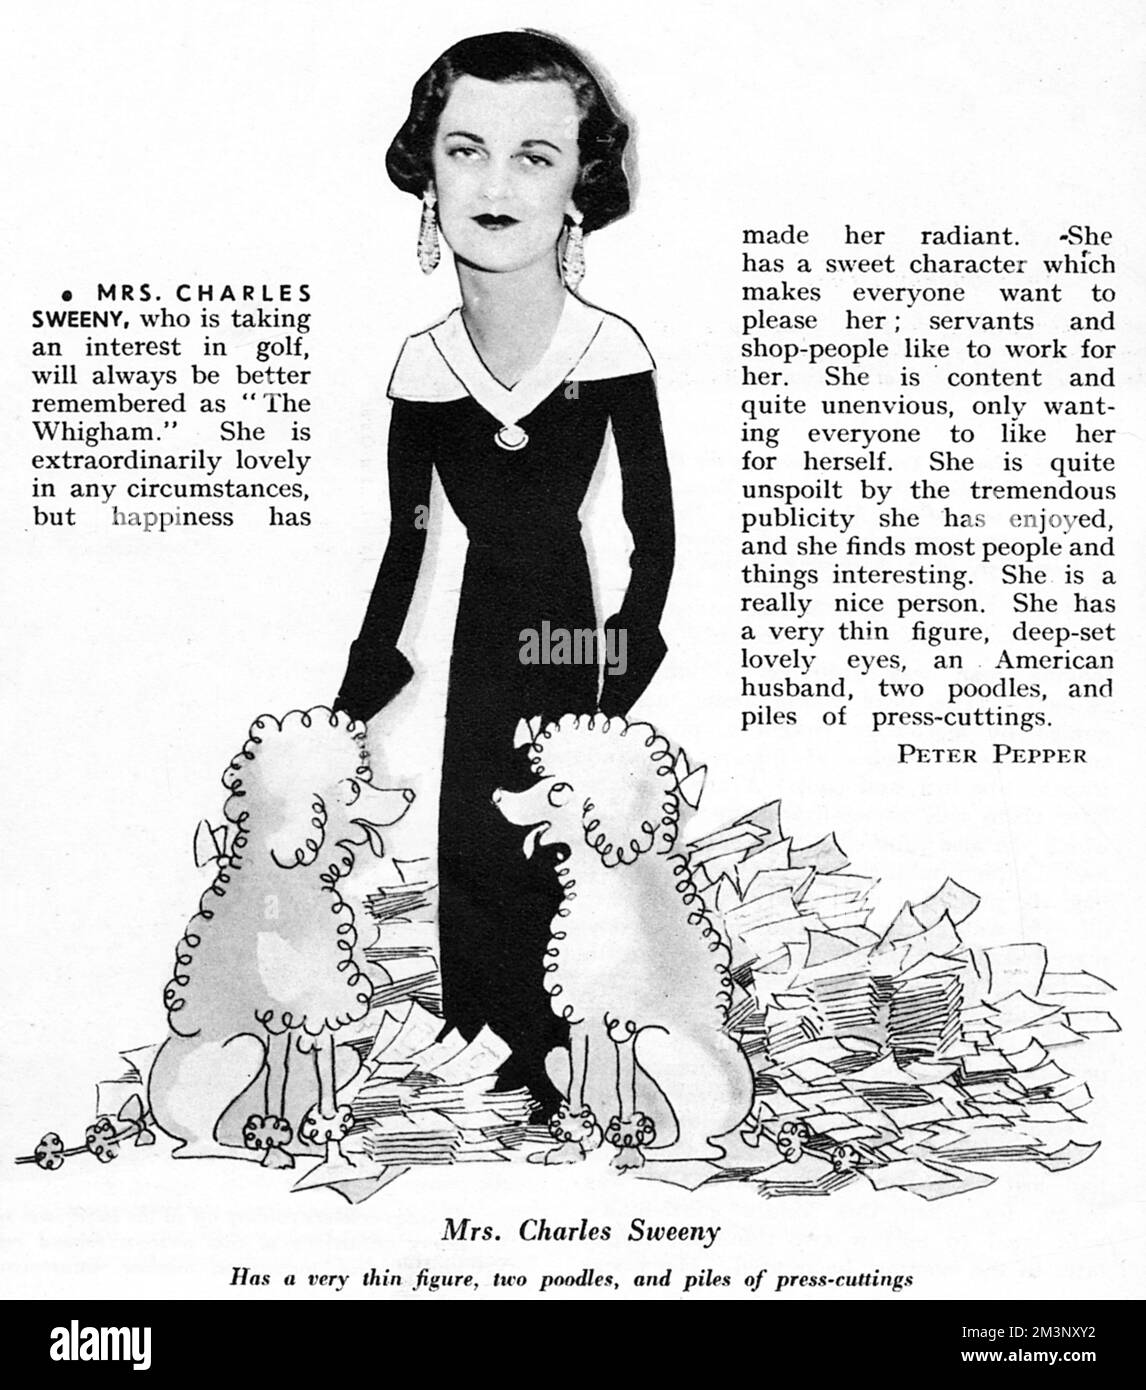 La signora Charles Sweeny, apparsa come una delle maggiori personalità del 1933, raffigurata in parte in caricatura con due cuccioli (una razza di cane di cui era particolarmente affezionata) e circondata da mucchi di tacchi di stampa. Data: 1933 Foto Stock